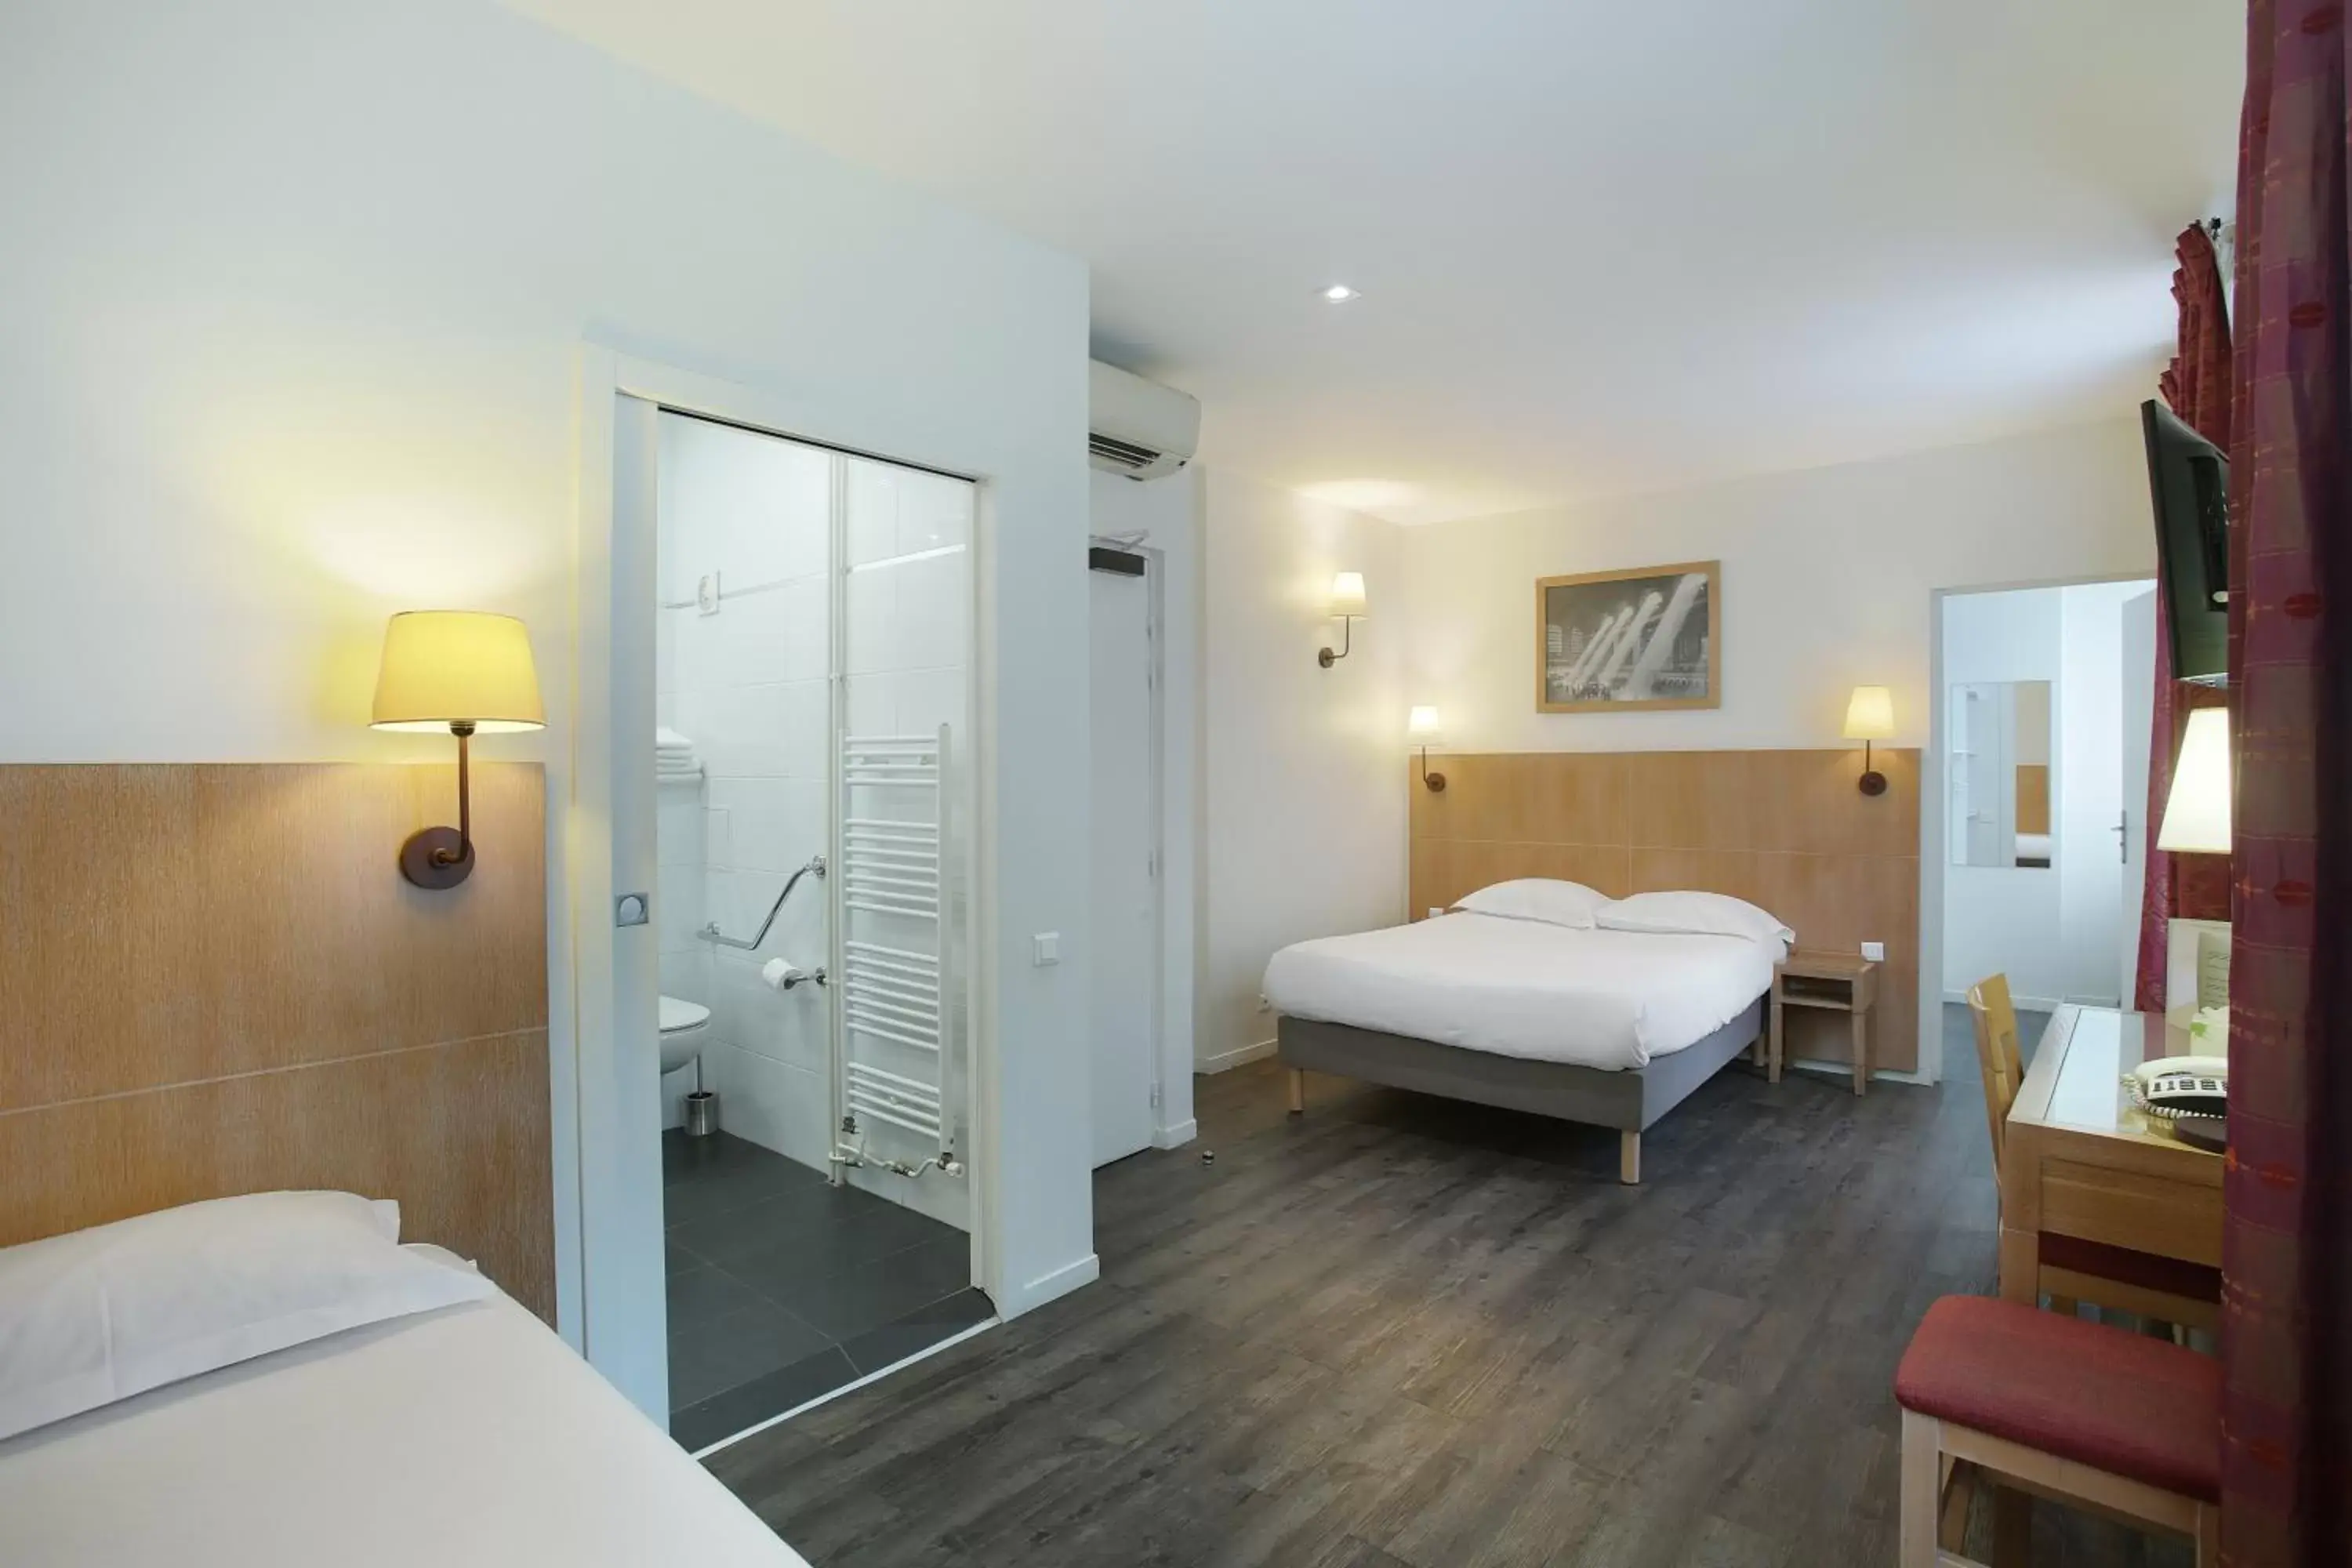 Bedroom, Bathroom in Hotel Gabriel Issy Paris